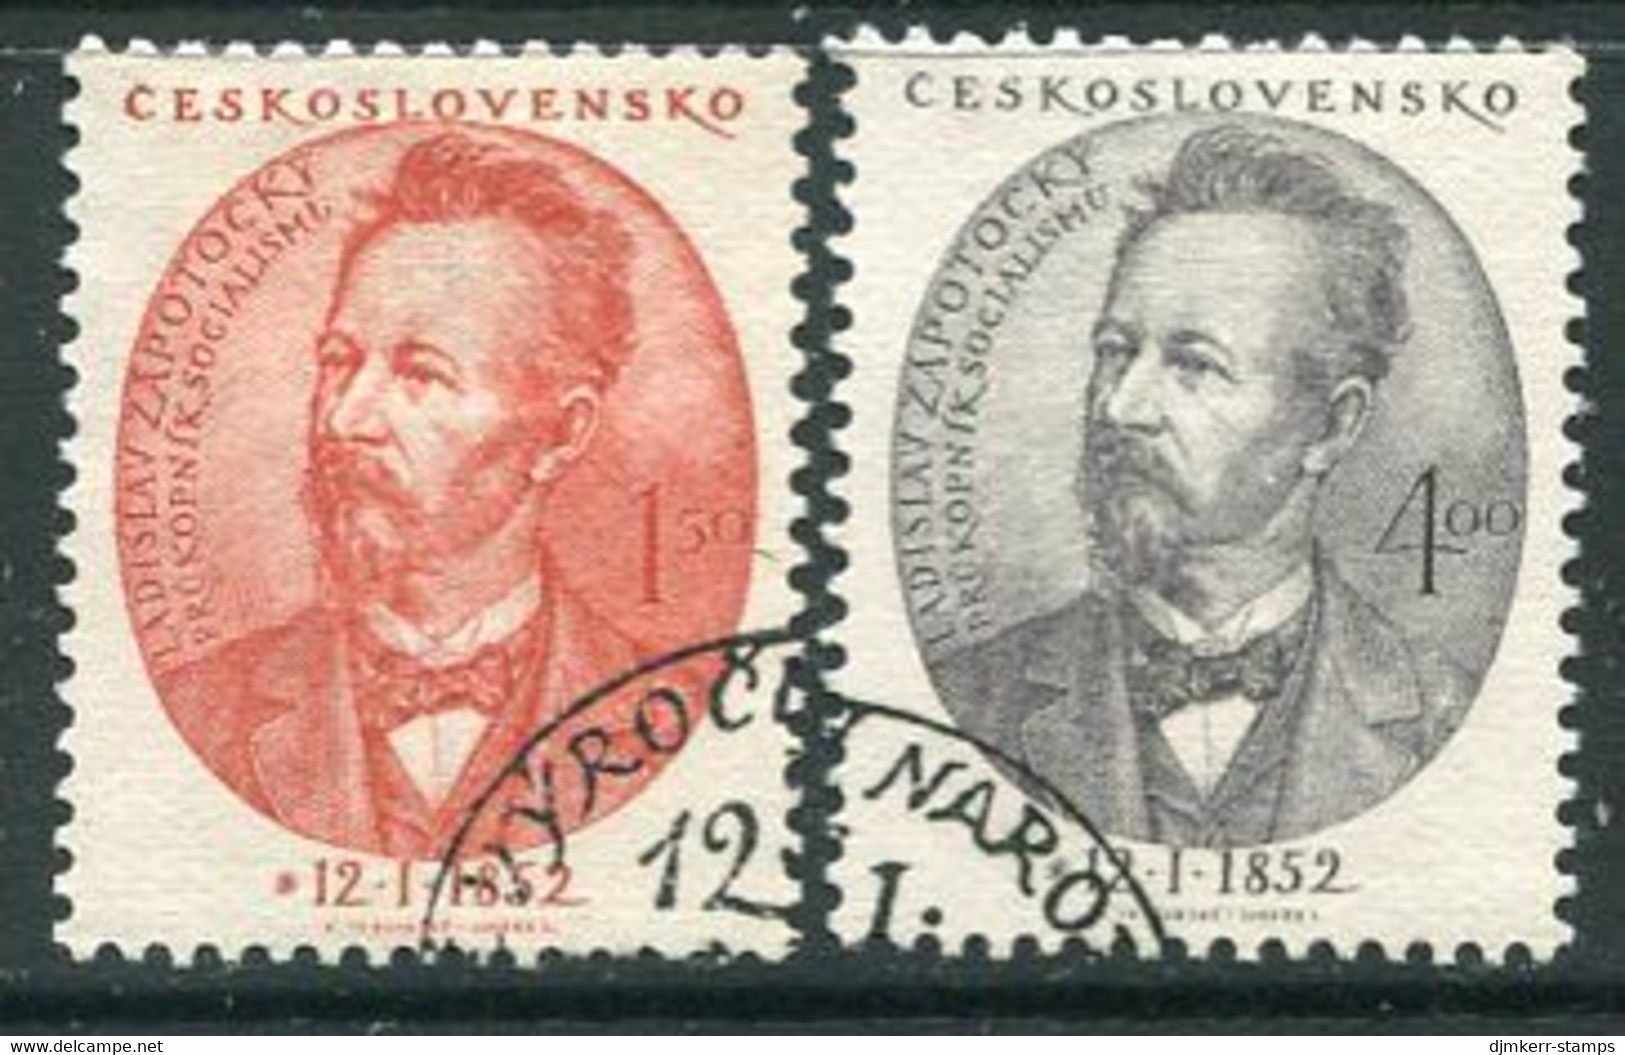 CZECHOSLOVAKIA 1952 Zapotocky Centenary Used.  Michel 701-02 - Used Stamps